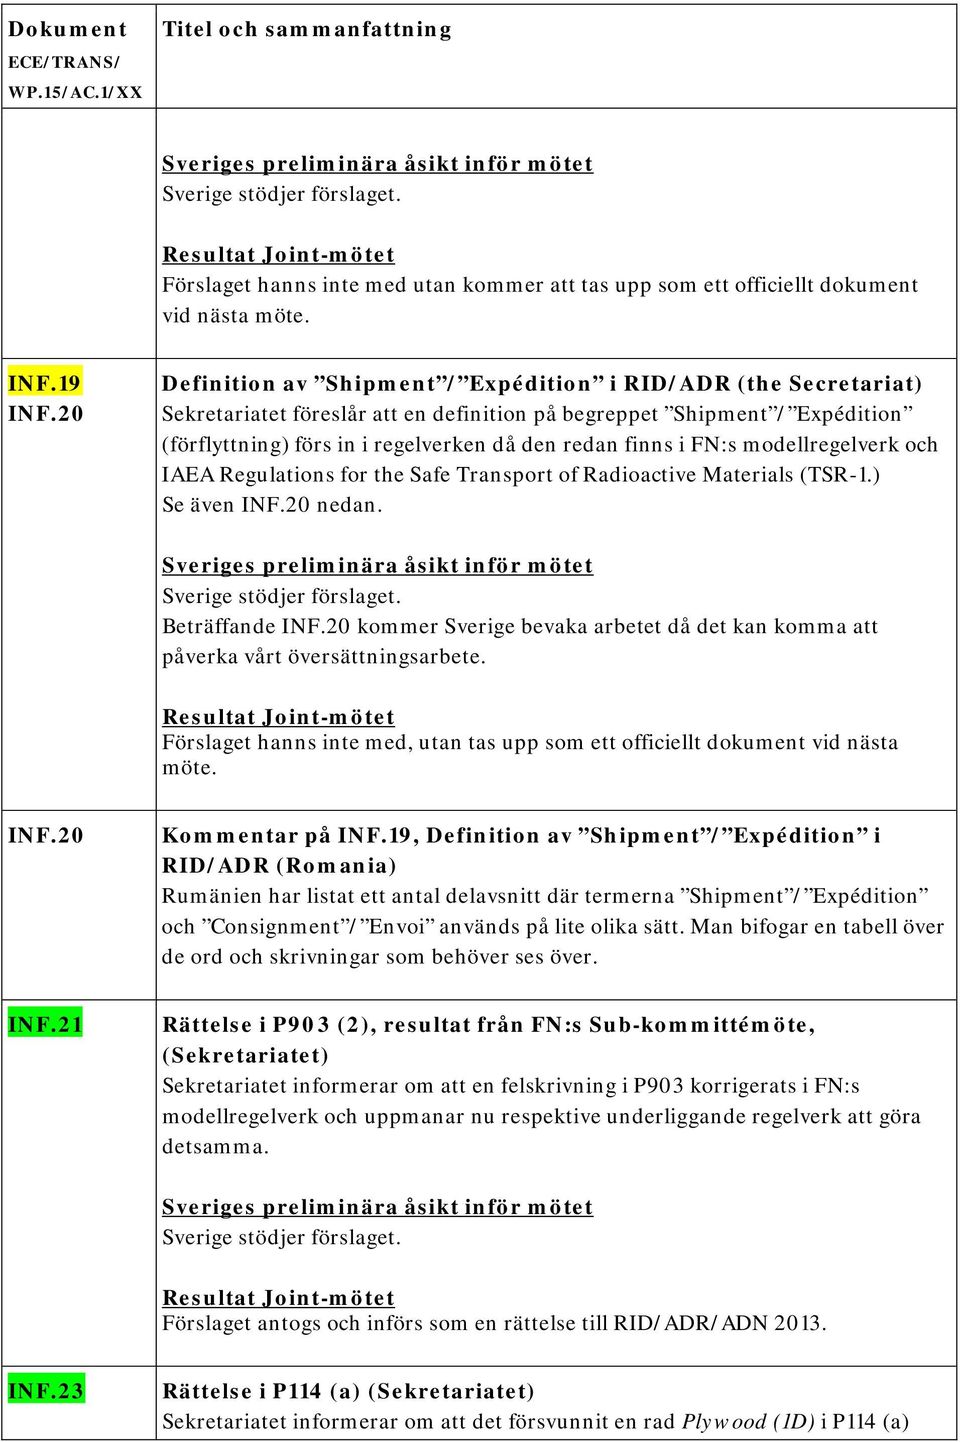 i FN:s modellregelverk och IAEA Regulations for the Safe Transport of Radioactive Materials (TSR-1.) Se även INF.20 nedan. Sverige stödjer förslaget. Beträffande INF.